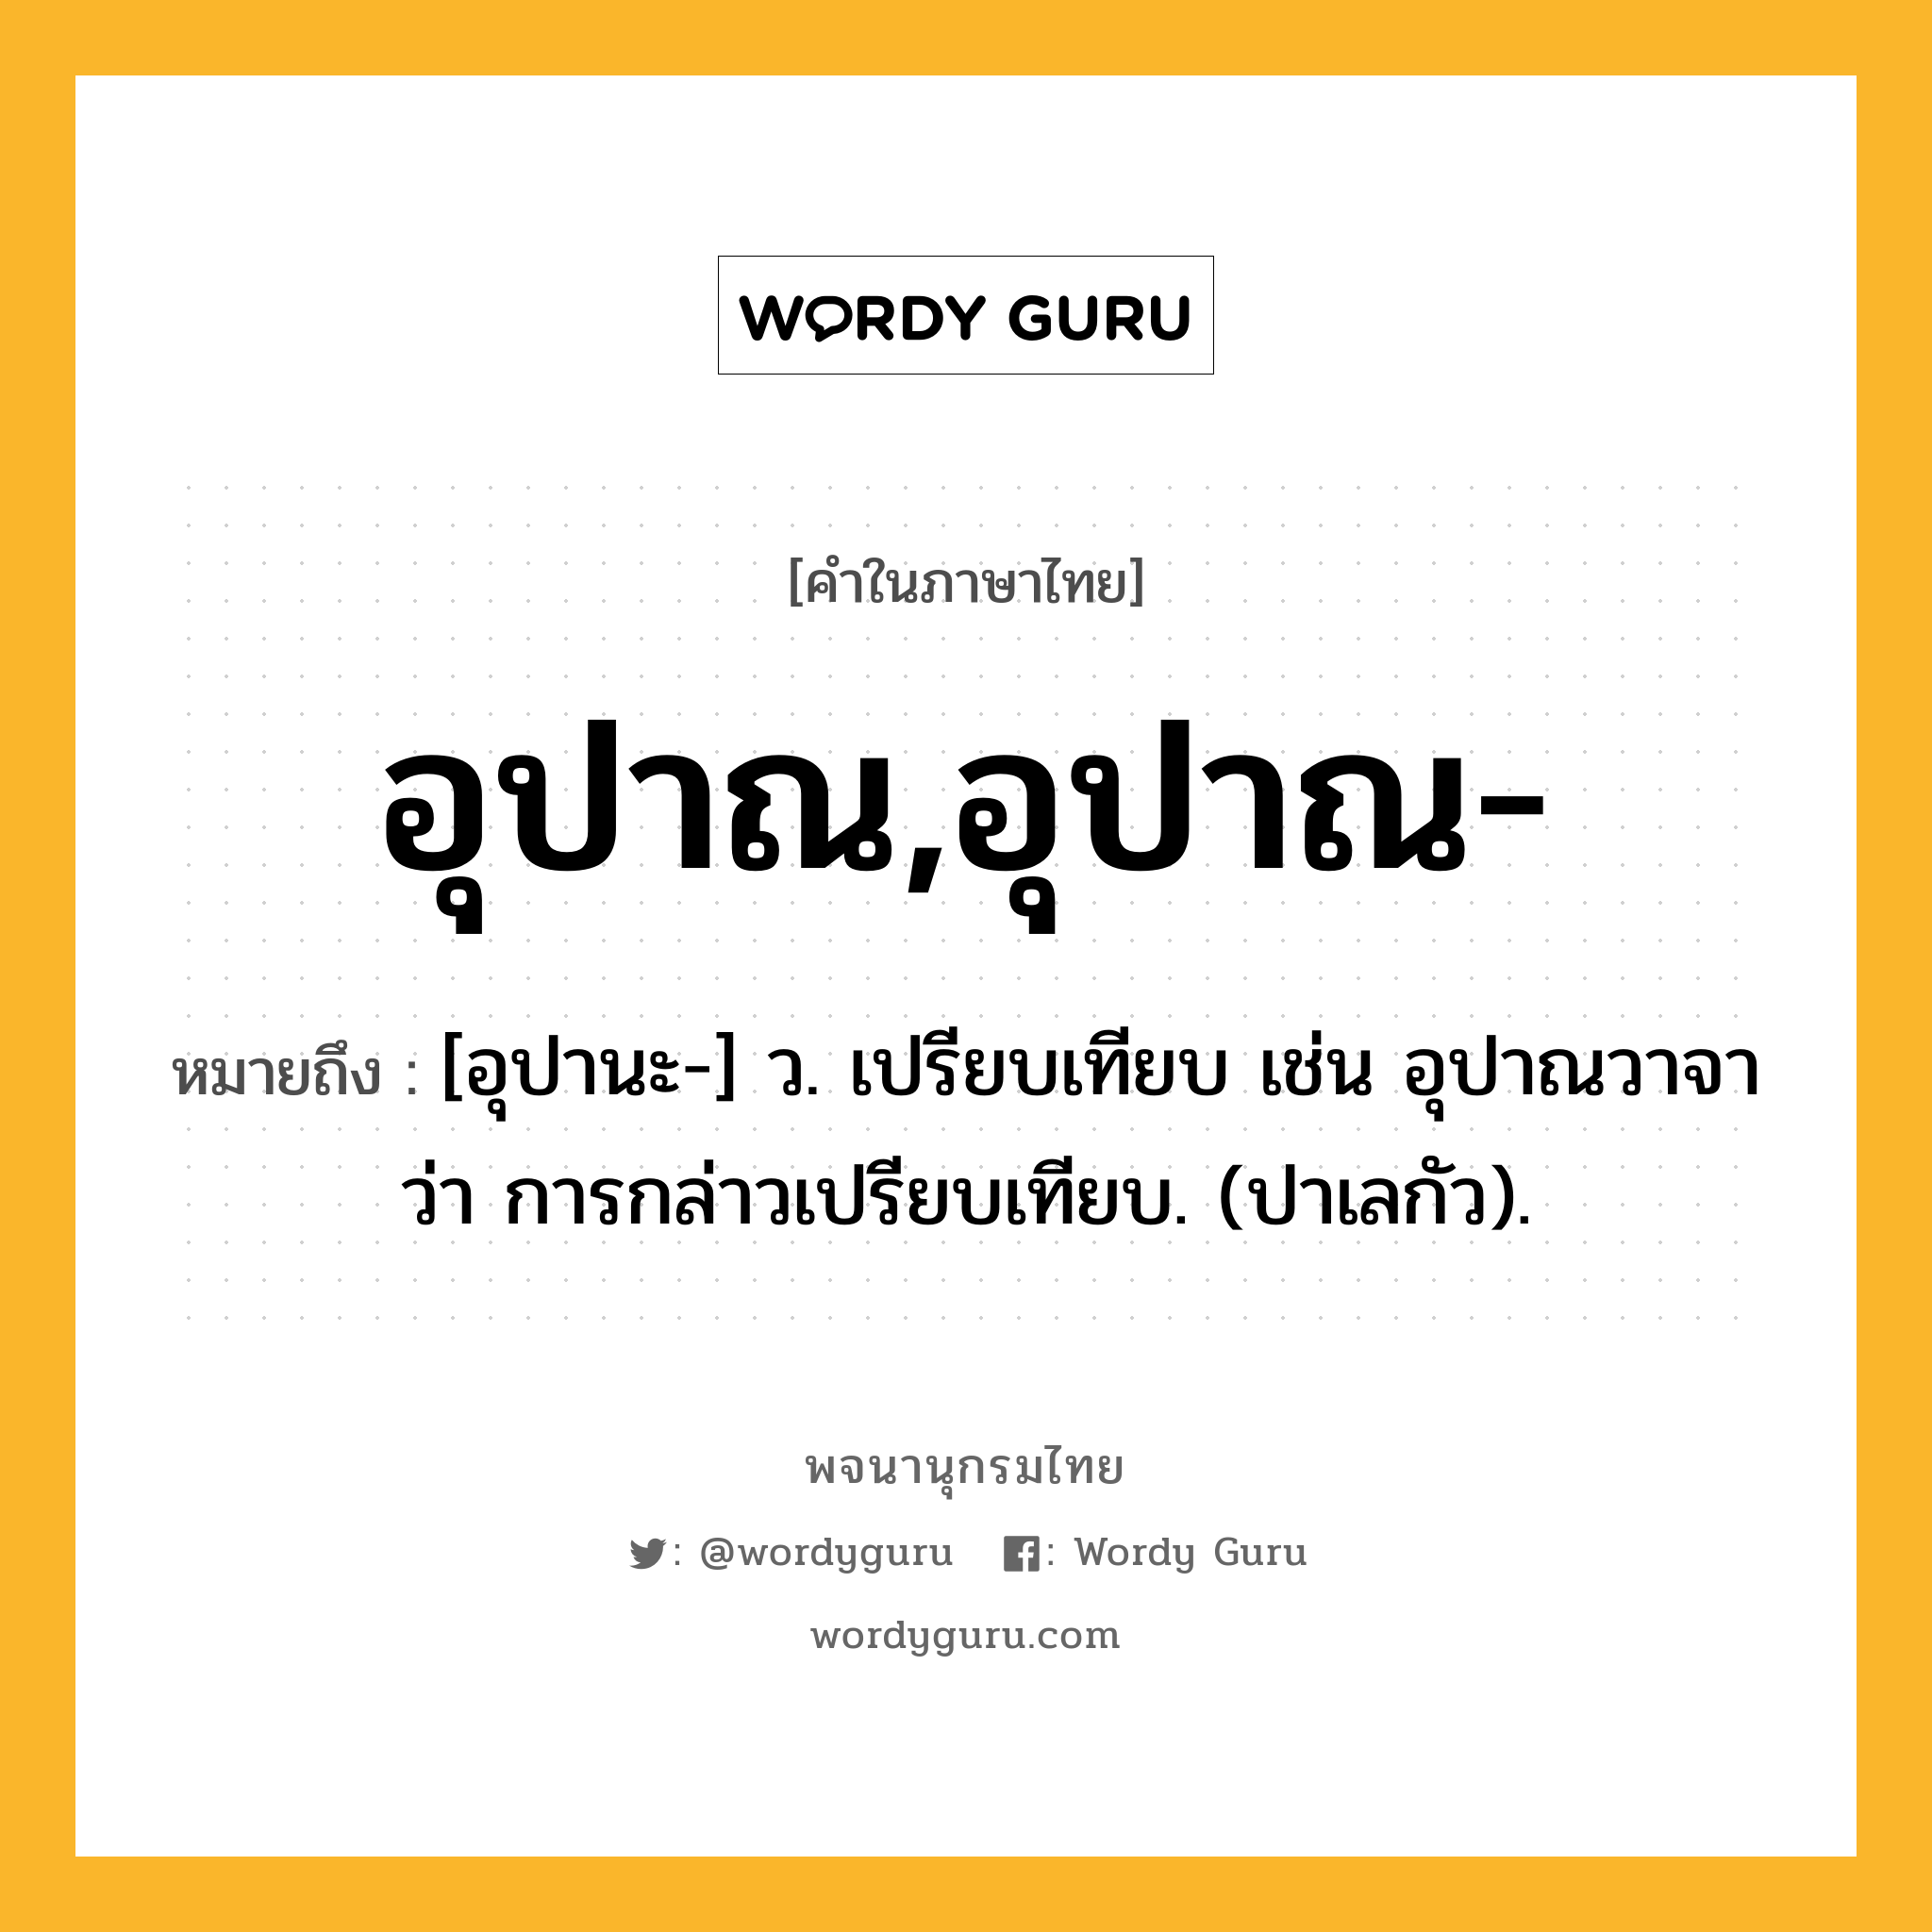 อุปาณ,อุปาณ- หมายถึงอะไร?, คำในภาษาไทย อุปาณ,อุปาณ- หมายถึง [อุปานะ-] ว. เปรียบเทียบ เช่น อุปาณวาจา ว่า การกล่าวเปรียบเทียบ. (ปาเลกัว).